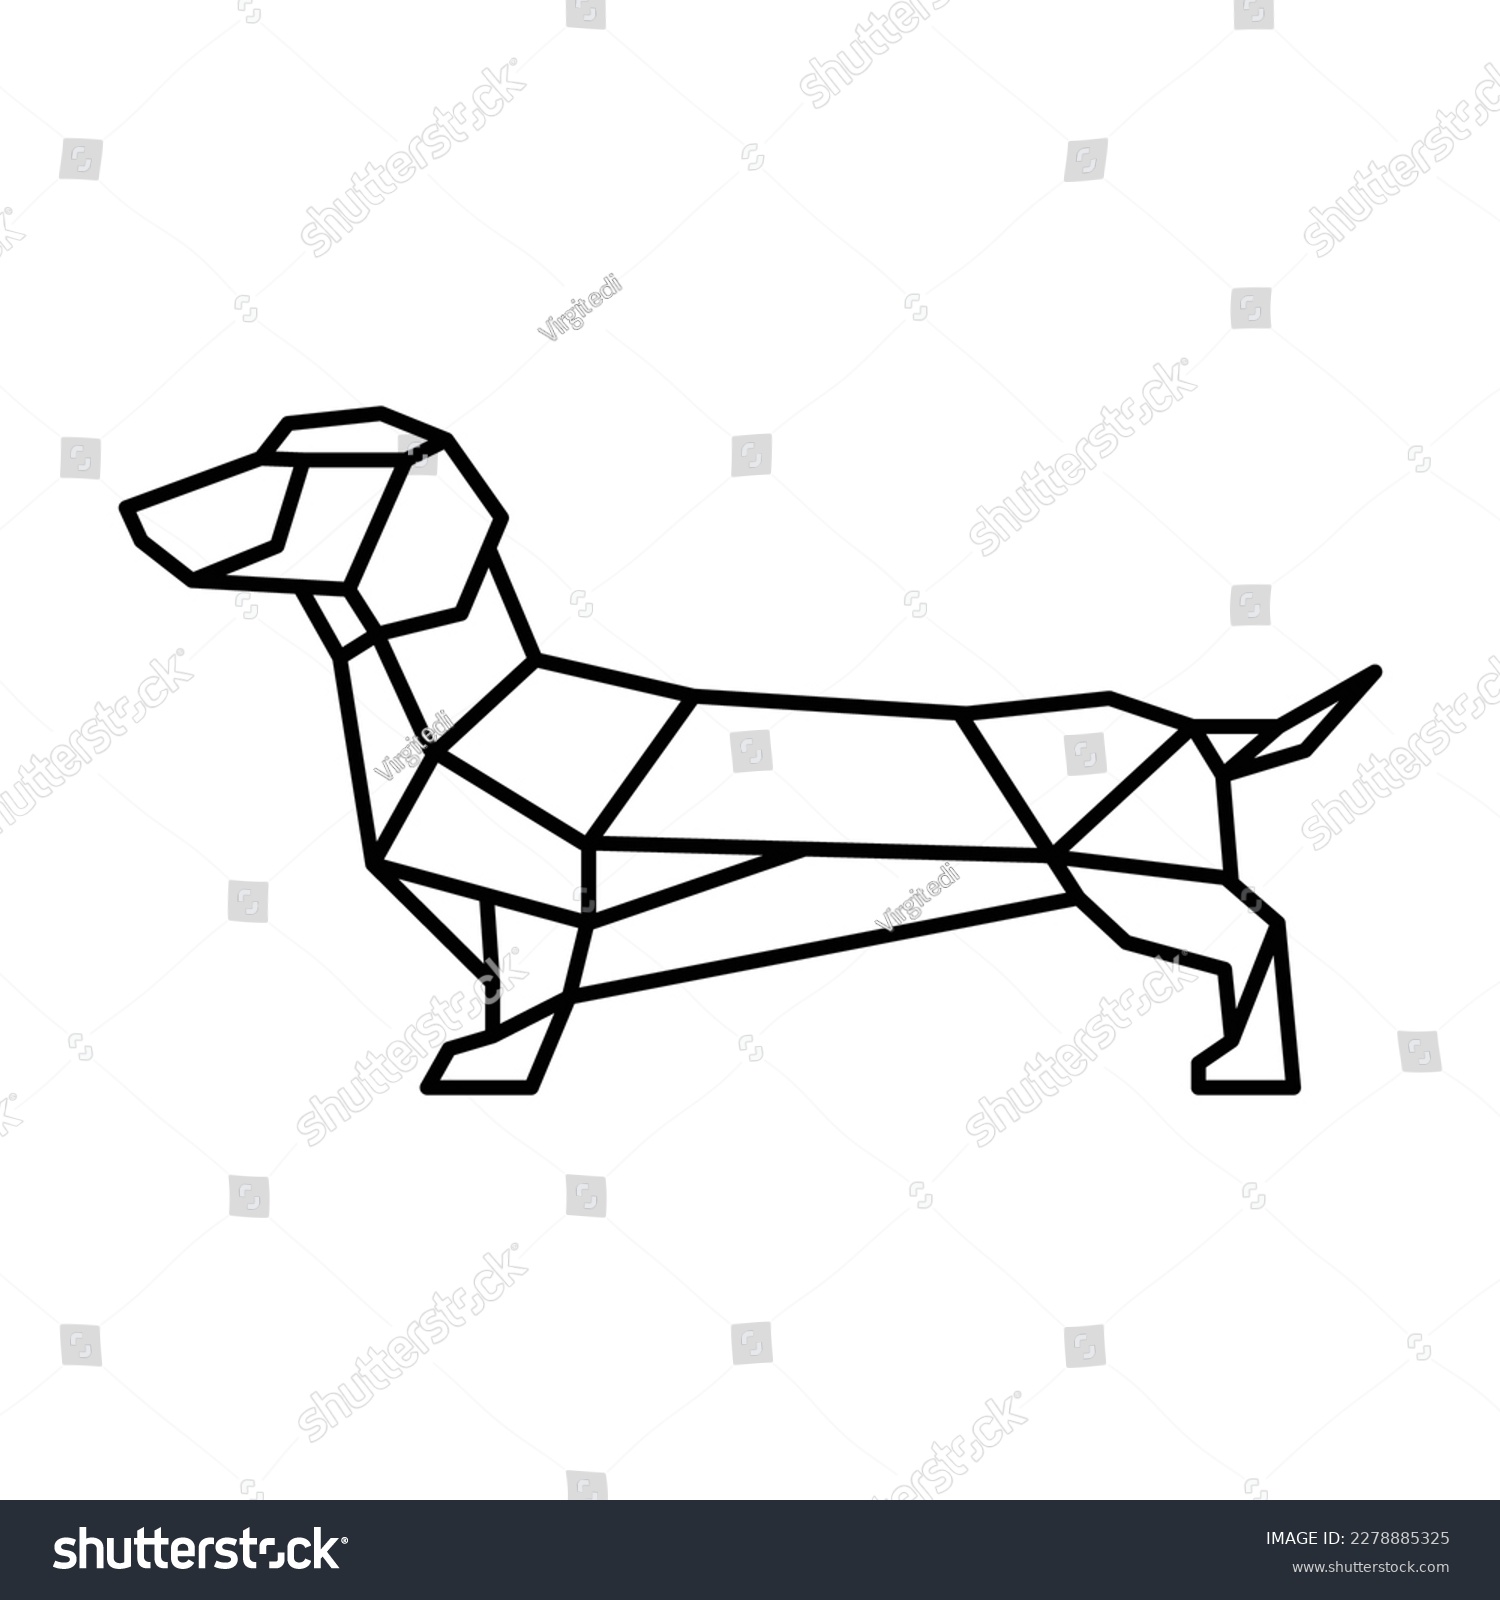 SVG of Polygonal little dog design drawing svg